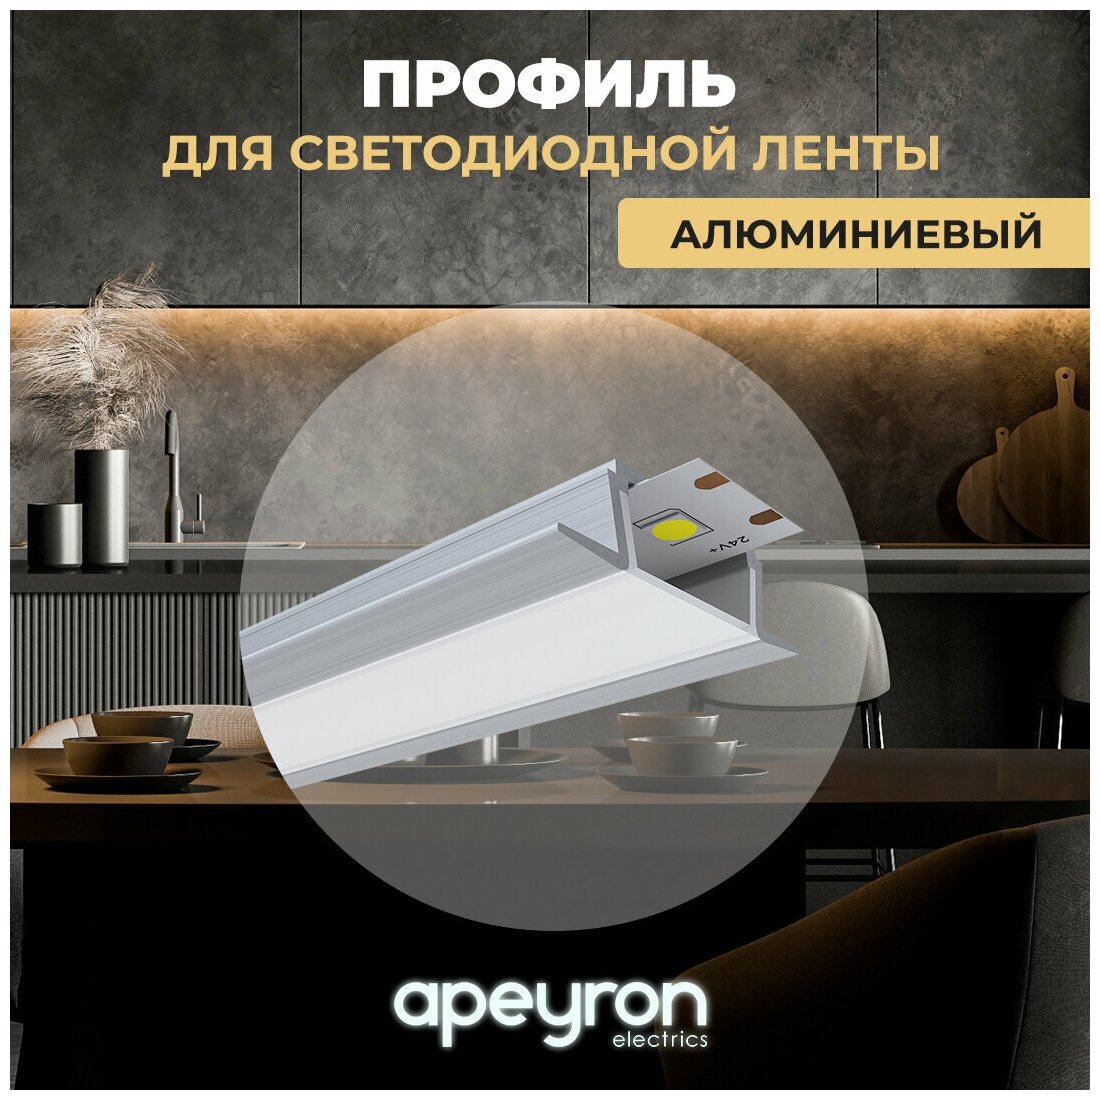 Алюминиевый профиль Apeyron 08-06 с рассеивателем белого цвета для светодиодной ленты